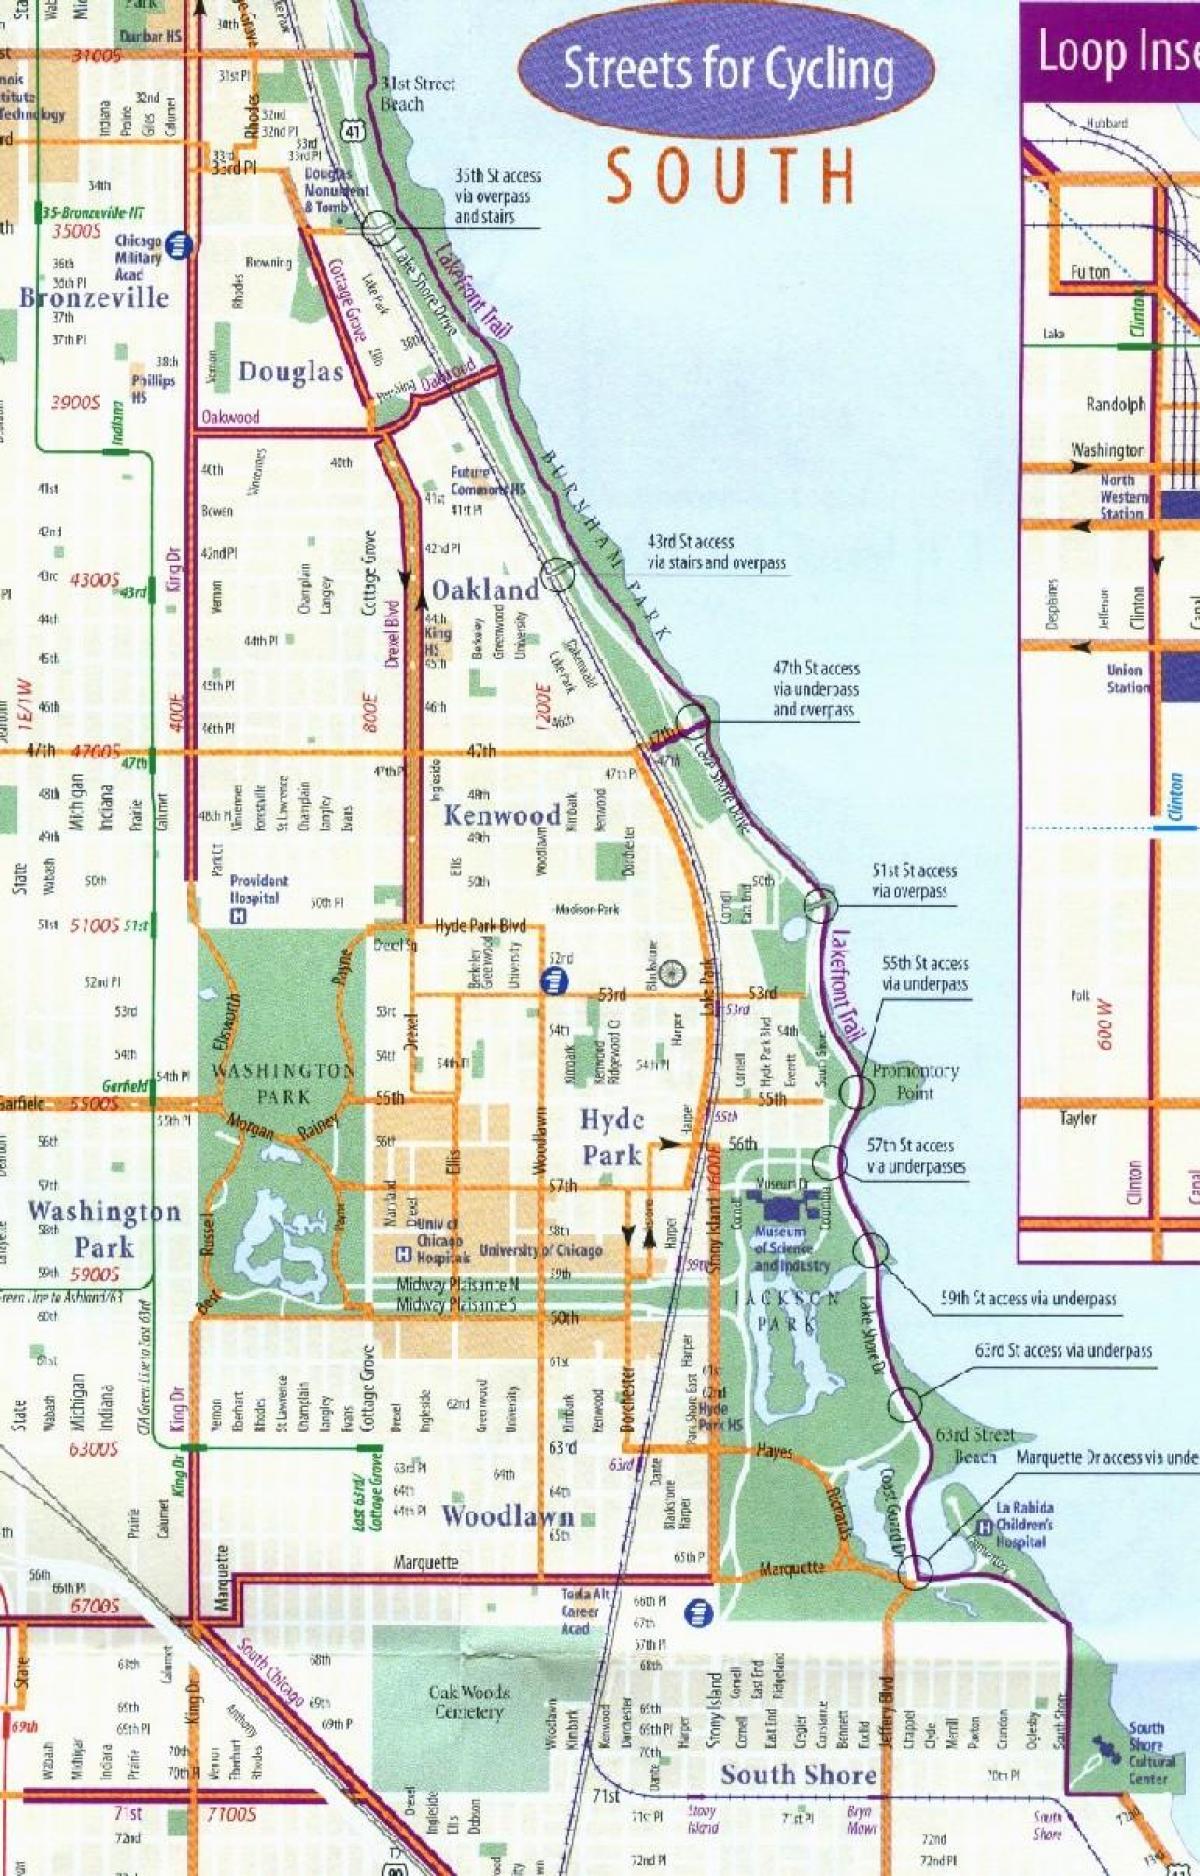 Չիկագոյում велодорожку քարտեզի վրա